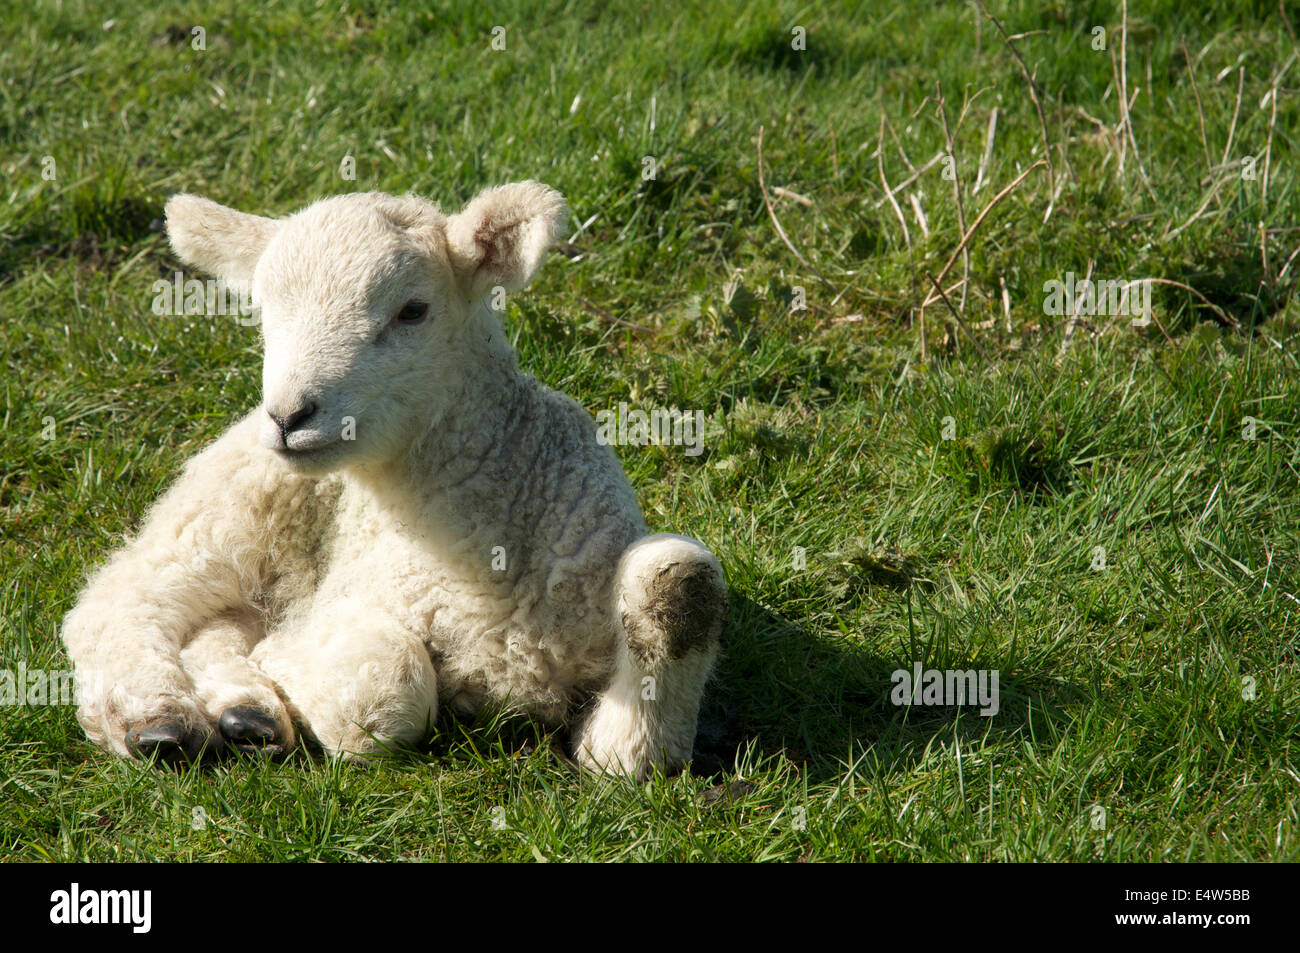 Photographie d'un agneau de printemps, abandonnées sur le sol Banque D'Images